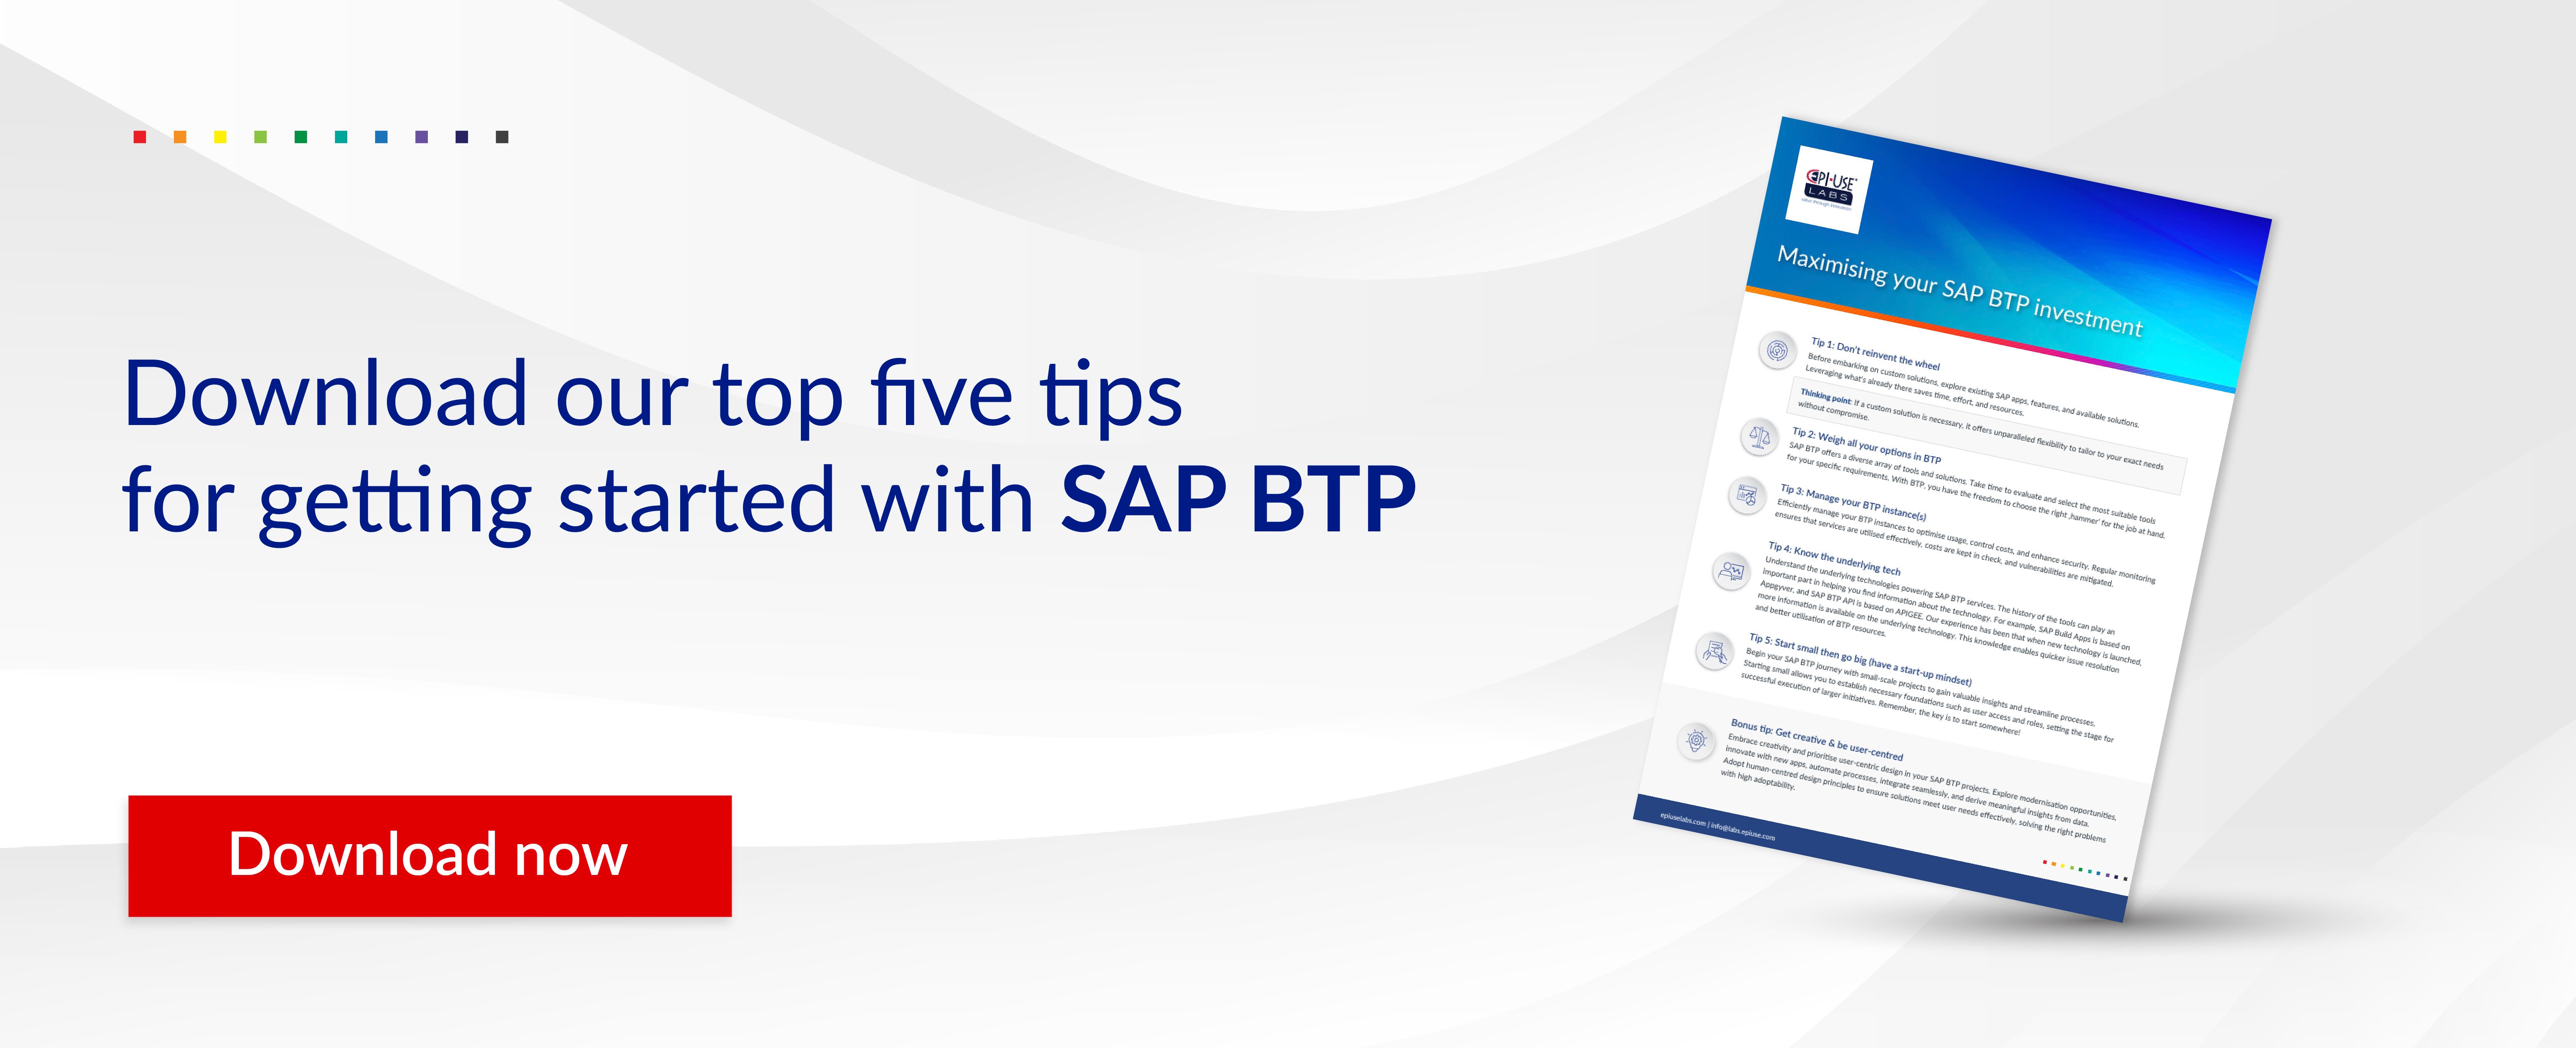 BTP_Download_top_tips